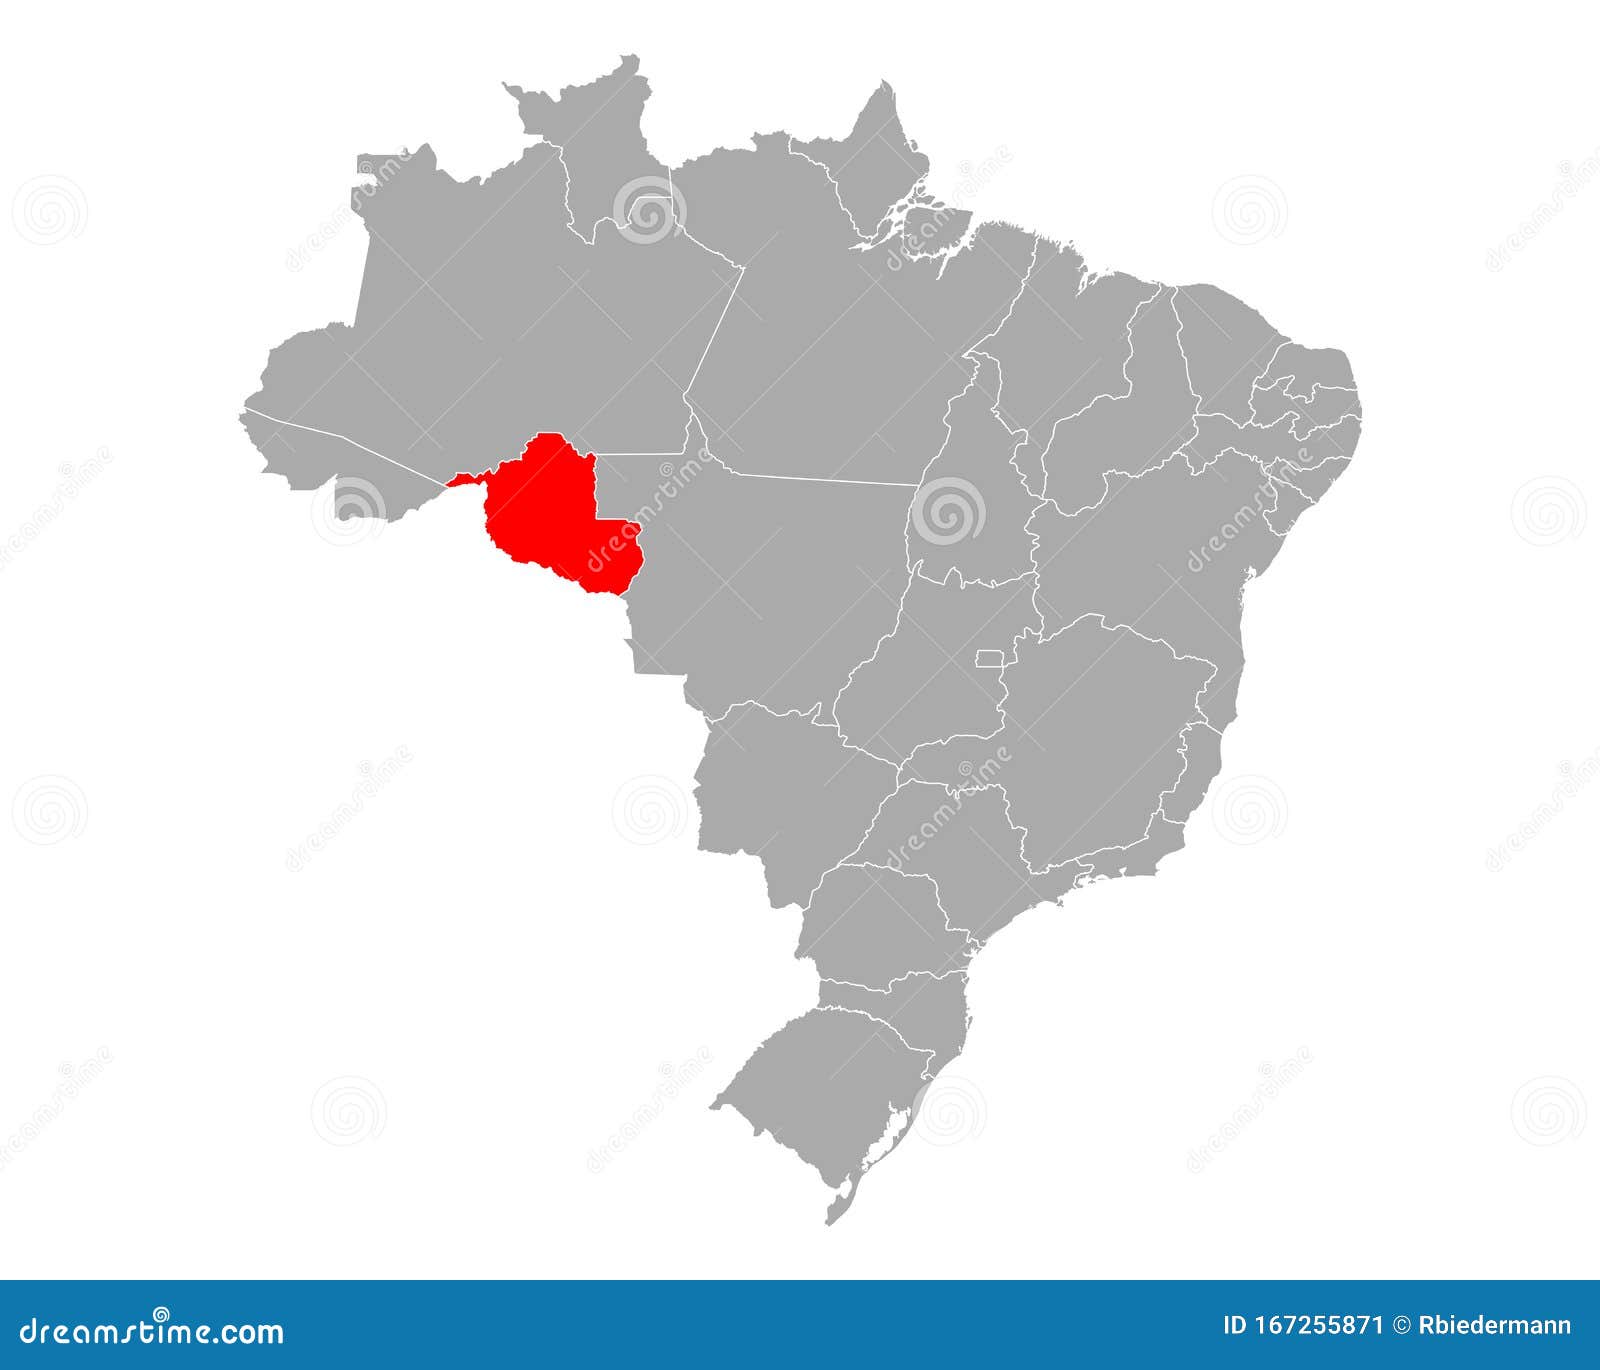 Mapa do Brasil muda e Rondônia ganha 500km² de área